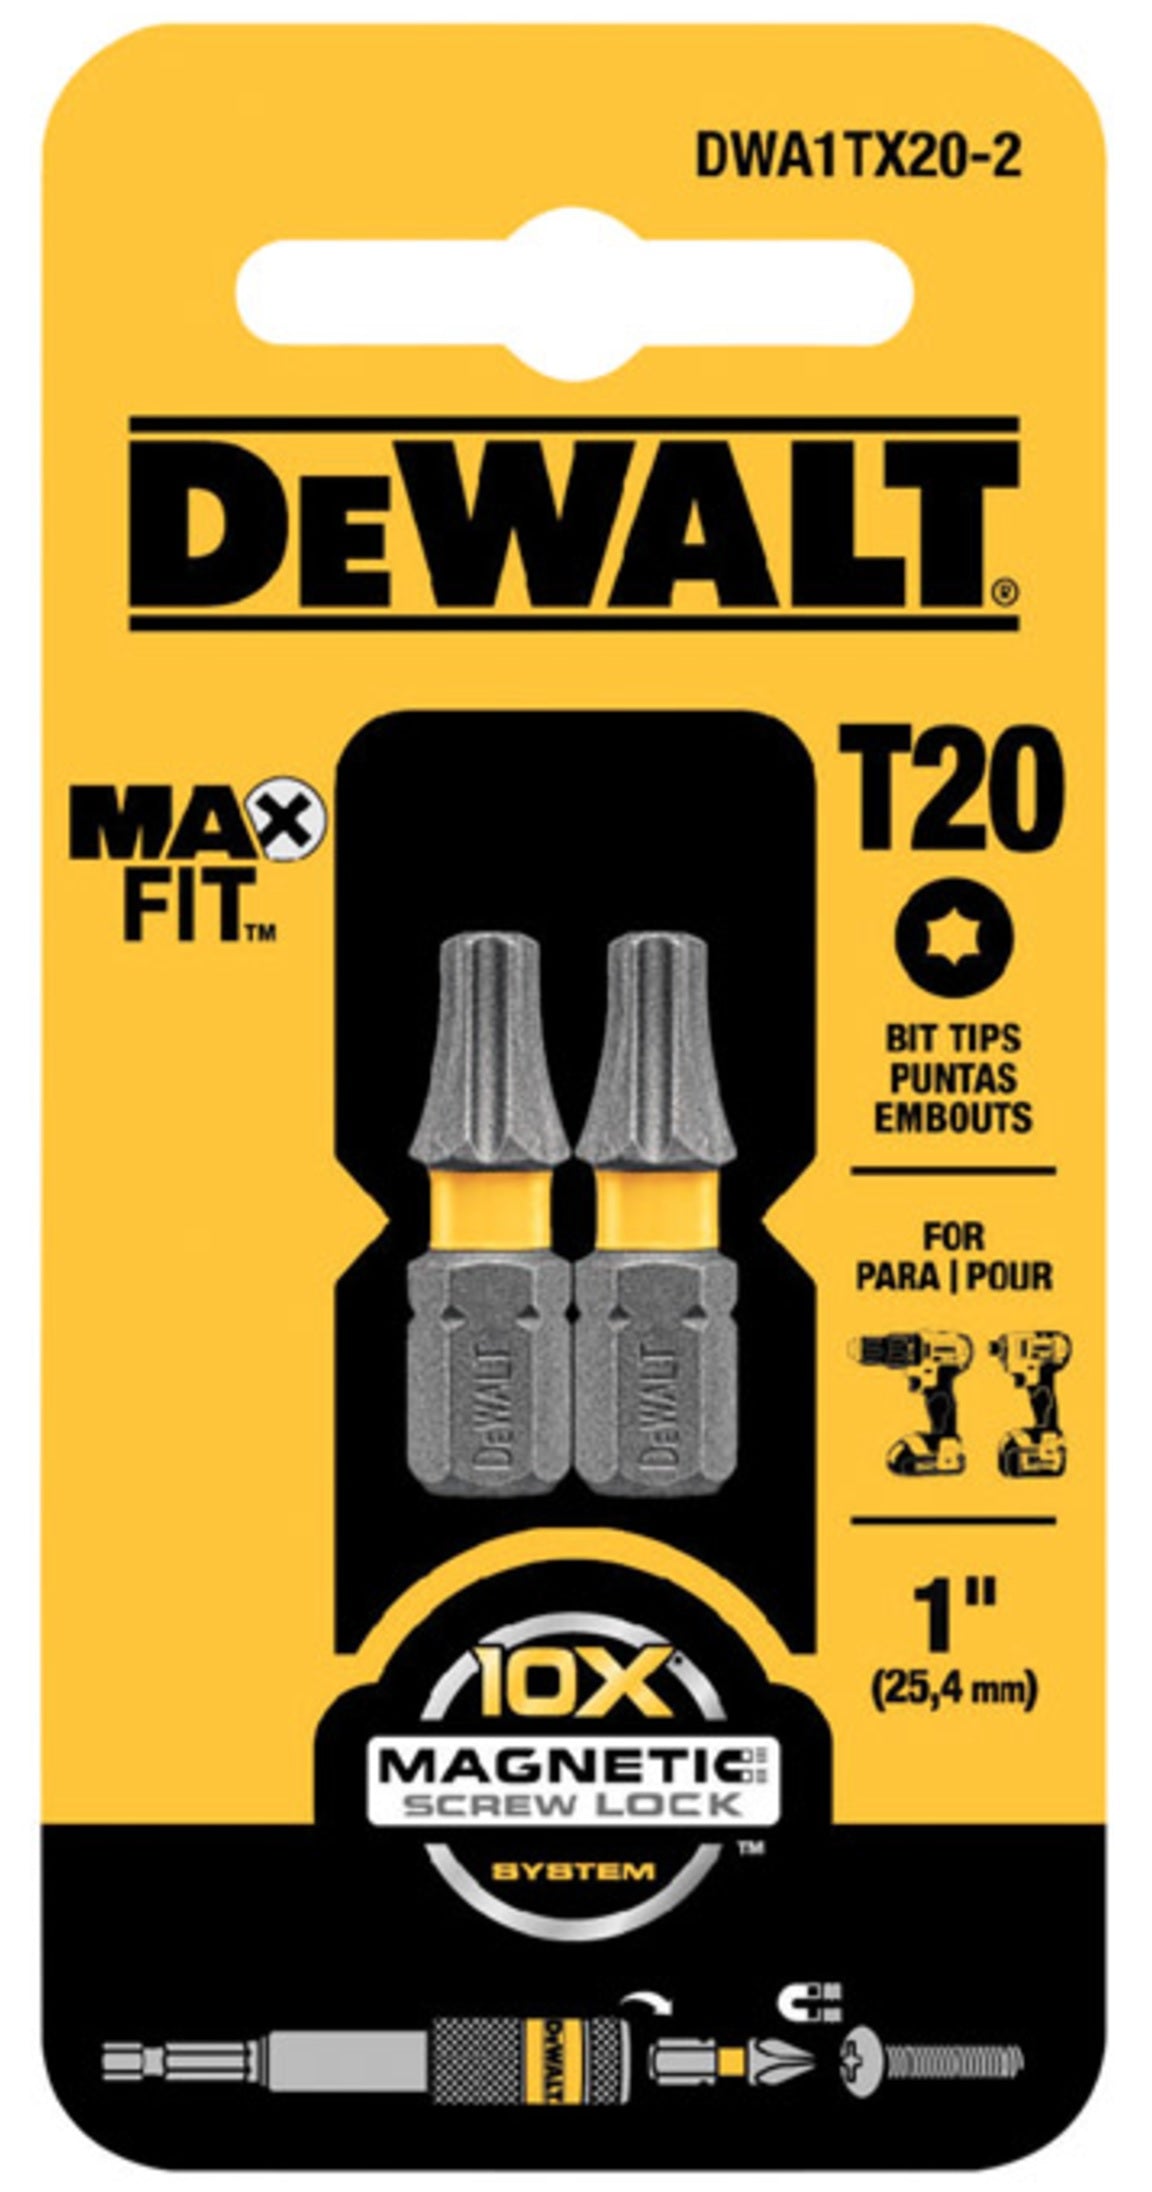 DeWalt DWA1TX20-2 MAXFIT Torx Insert Bits, T20 x 1"